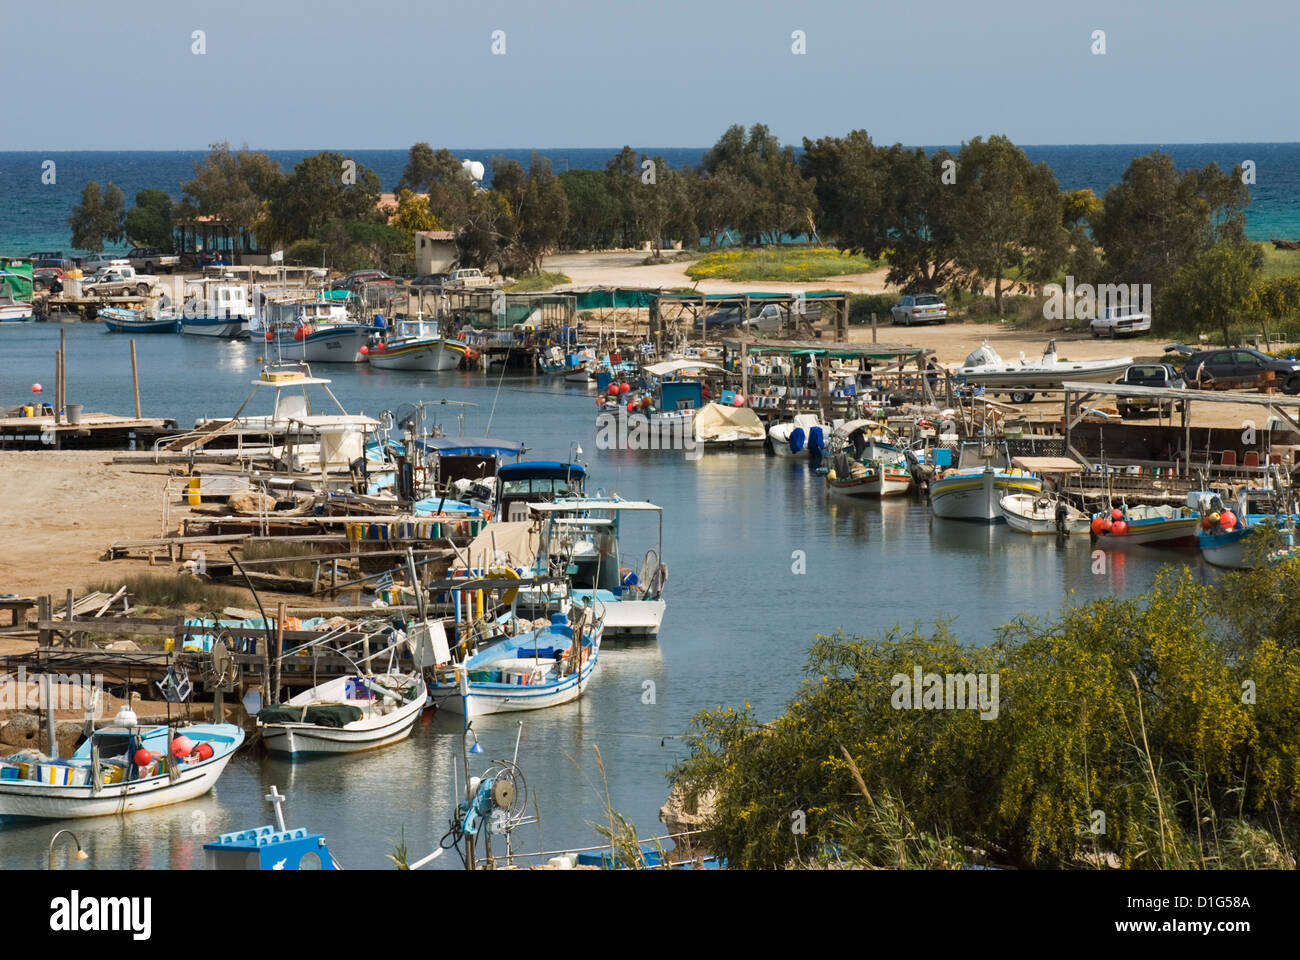 View along fishing creek, Potamos Tou Liopetri, Cyprus, Mediterranean, Europe Stock Photo